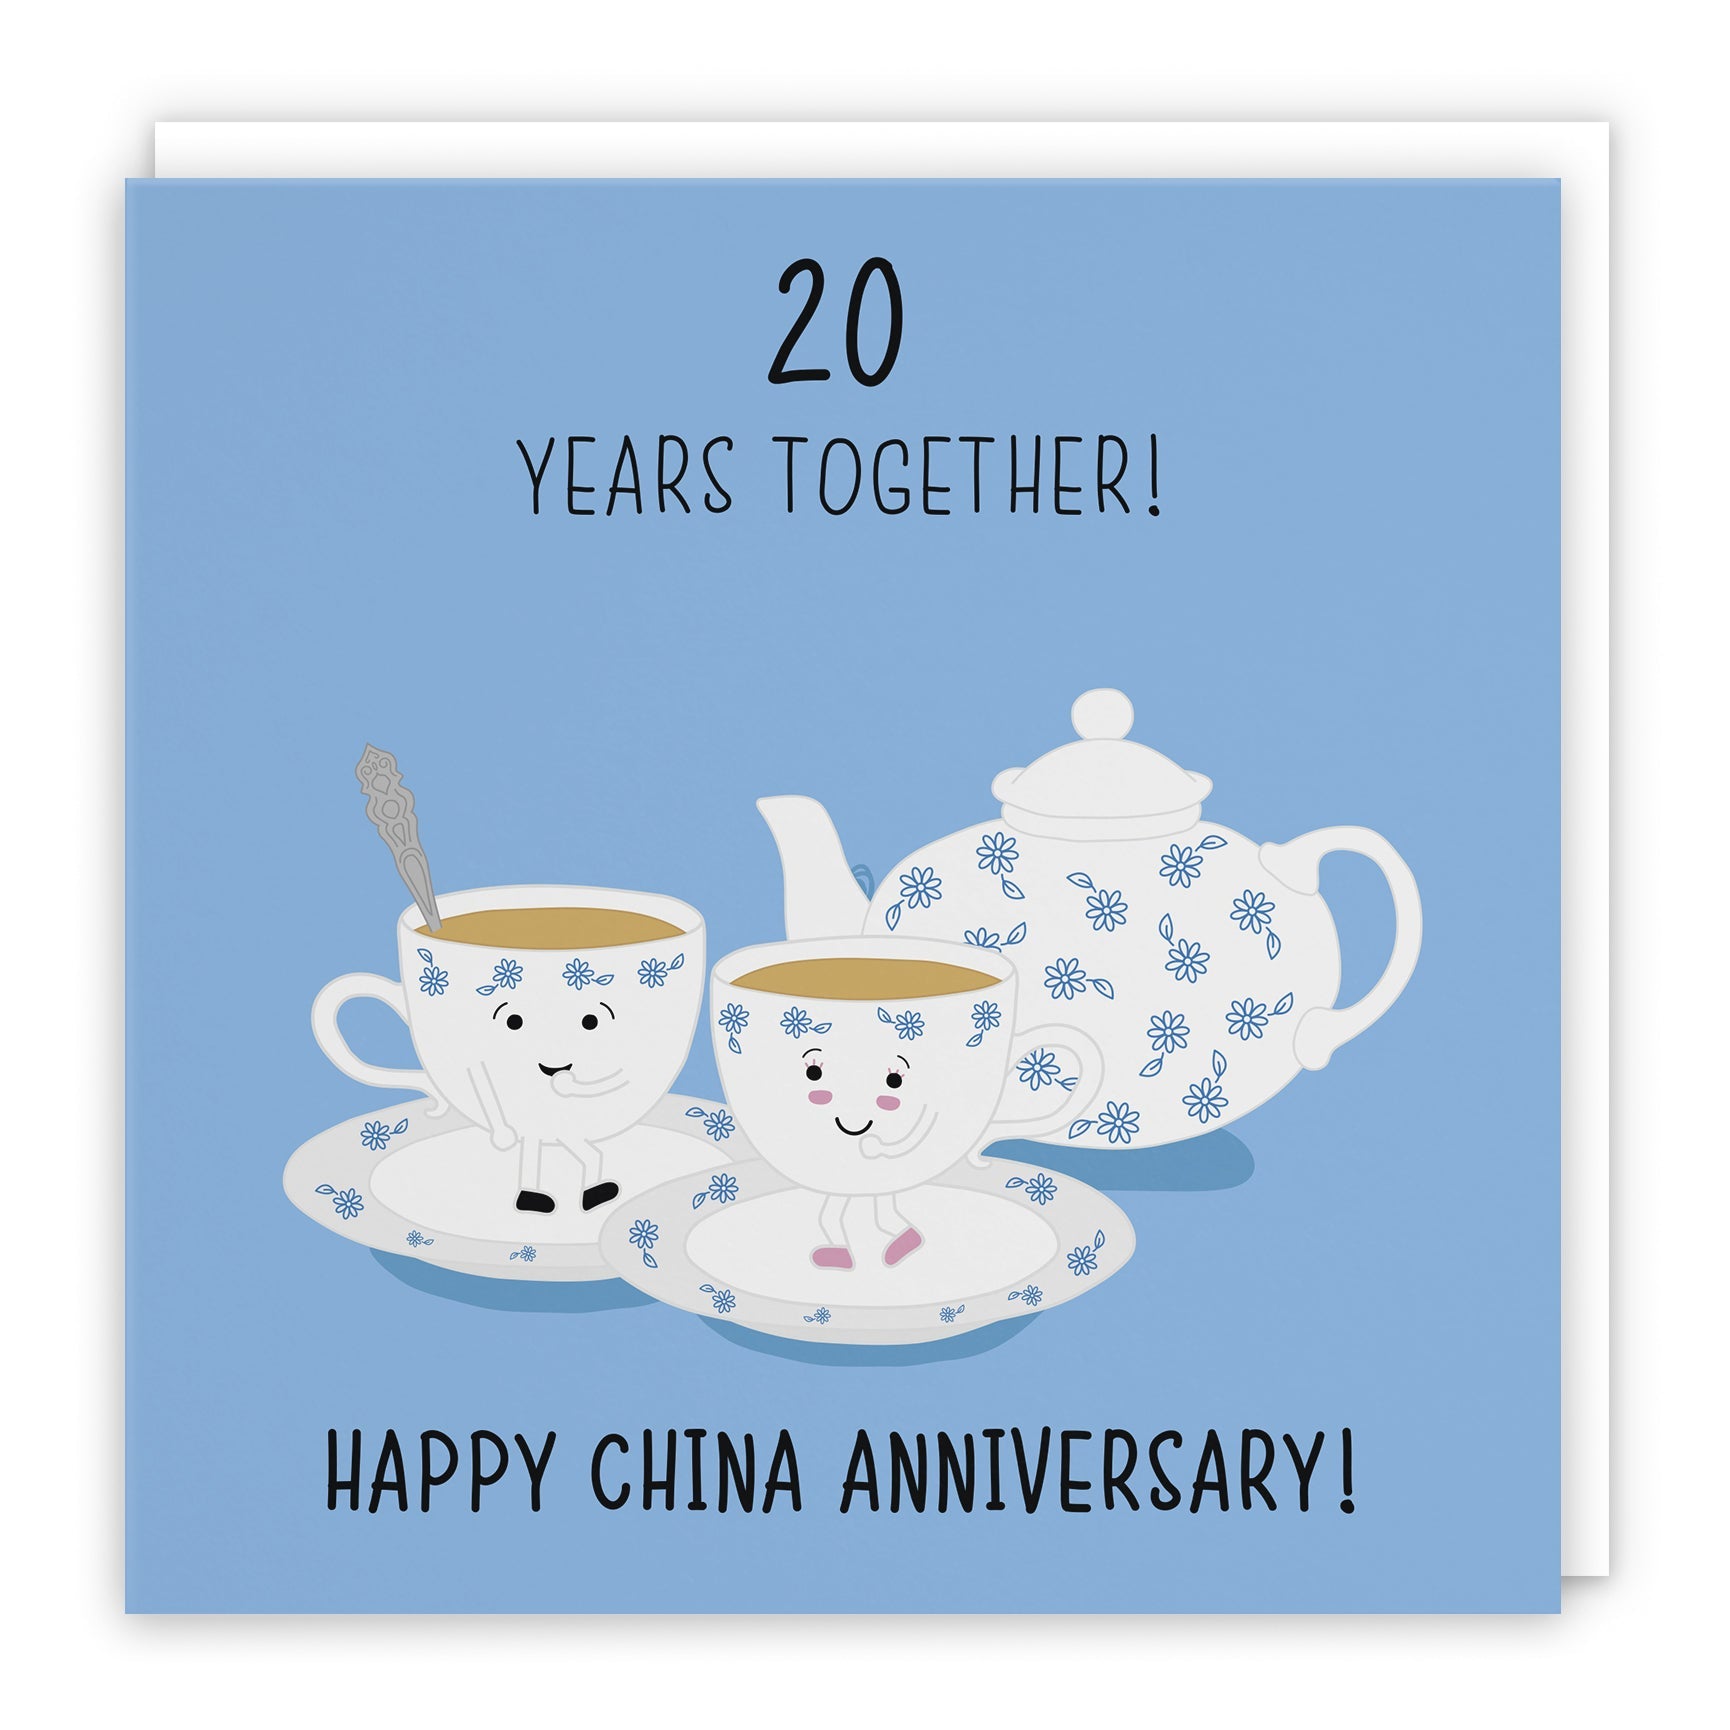 20th Anniversary Cards - China Anniversary